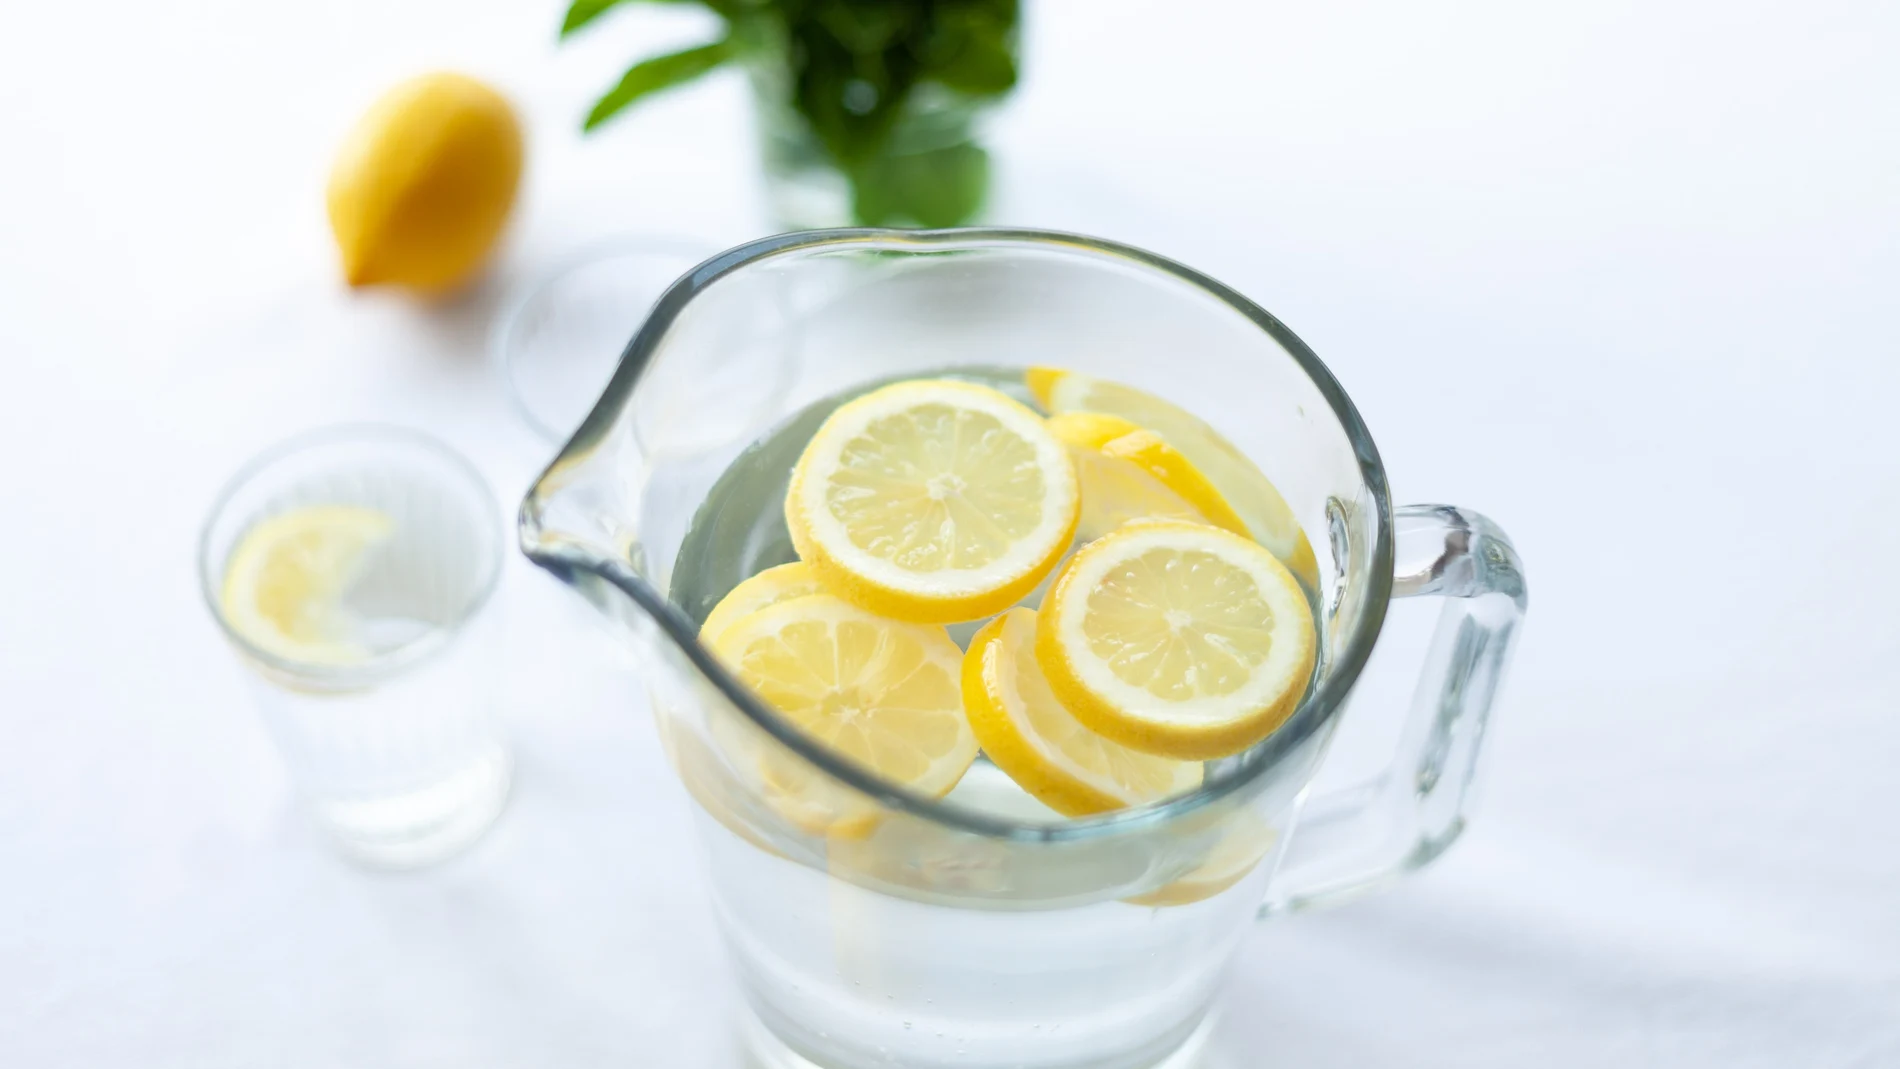 🍋 PERDER PESO  La dieta del limón: cómo adelgazar 7 Kilos en 5 días